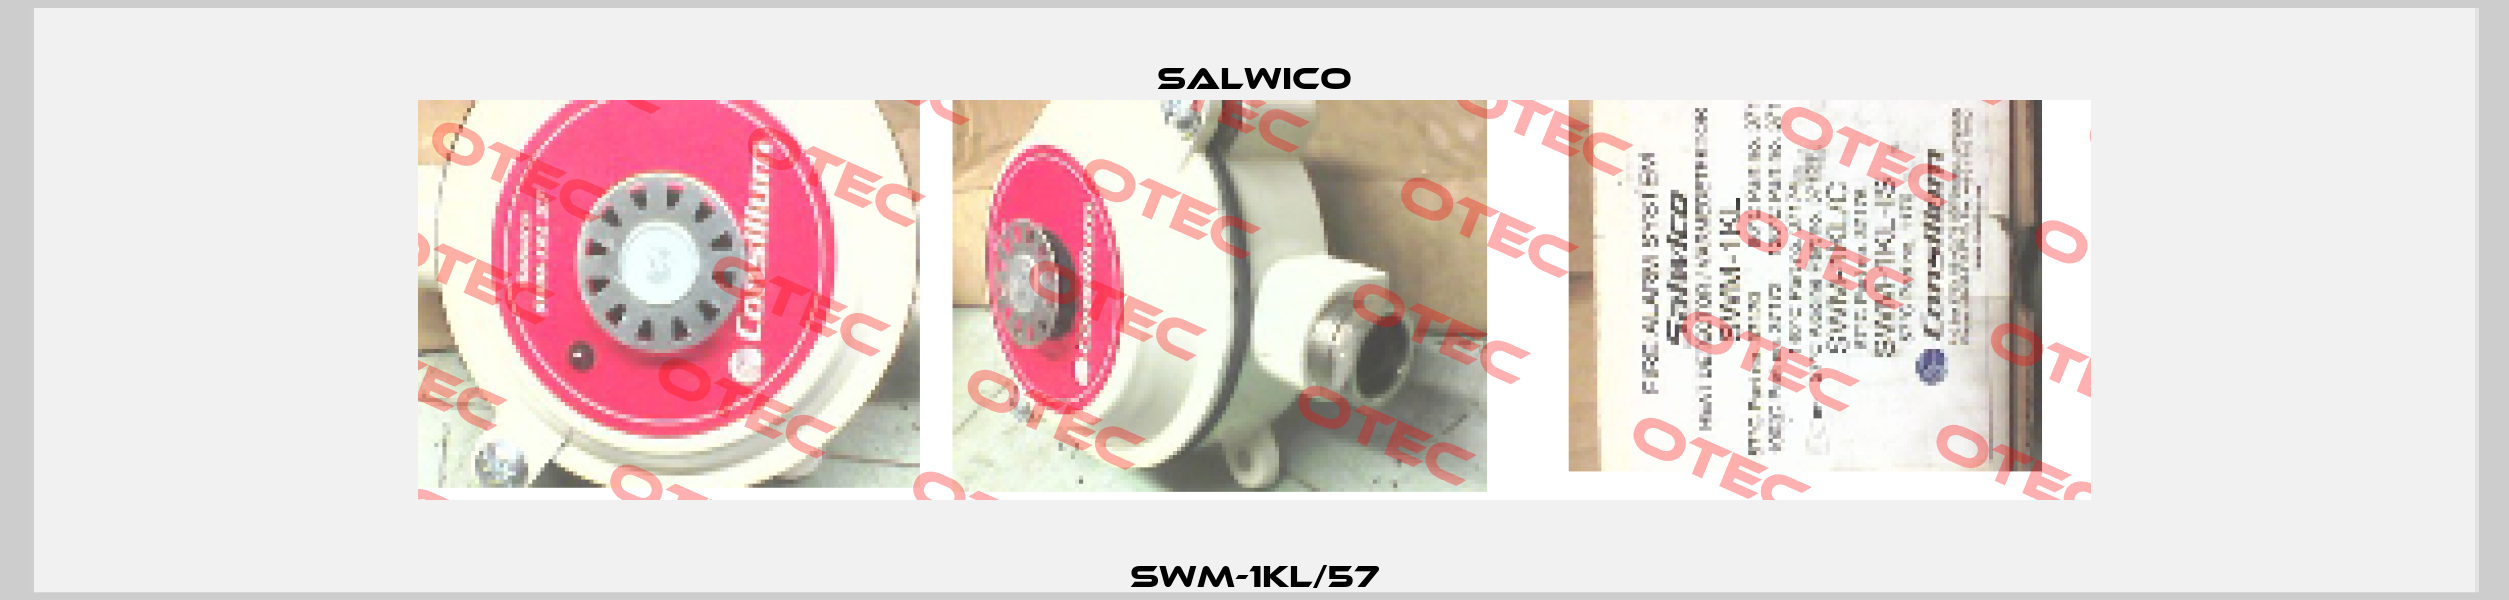 SWM-1KL/57 Salwico